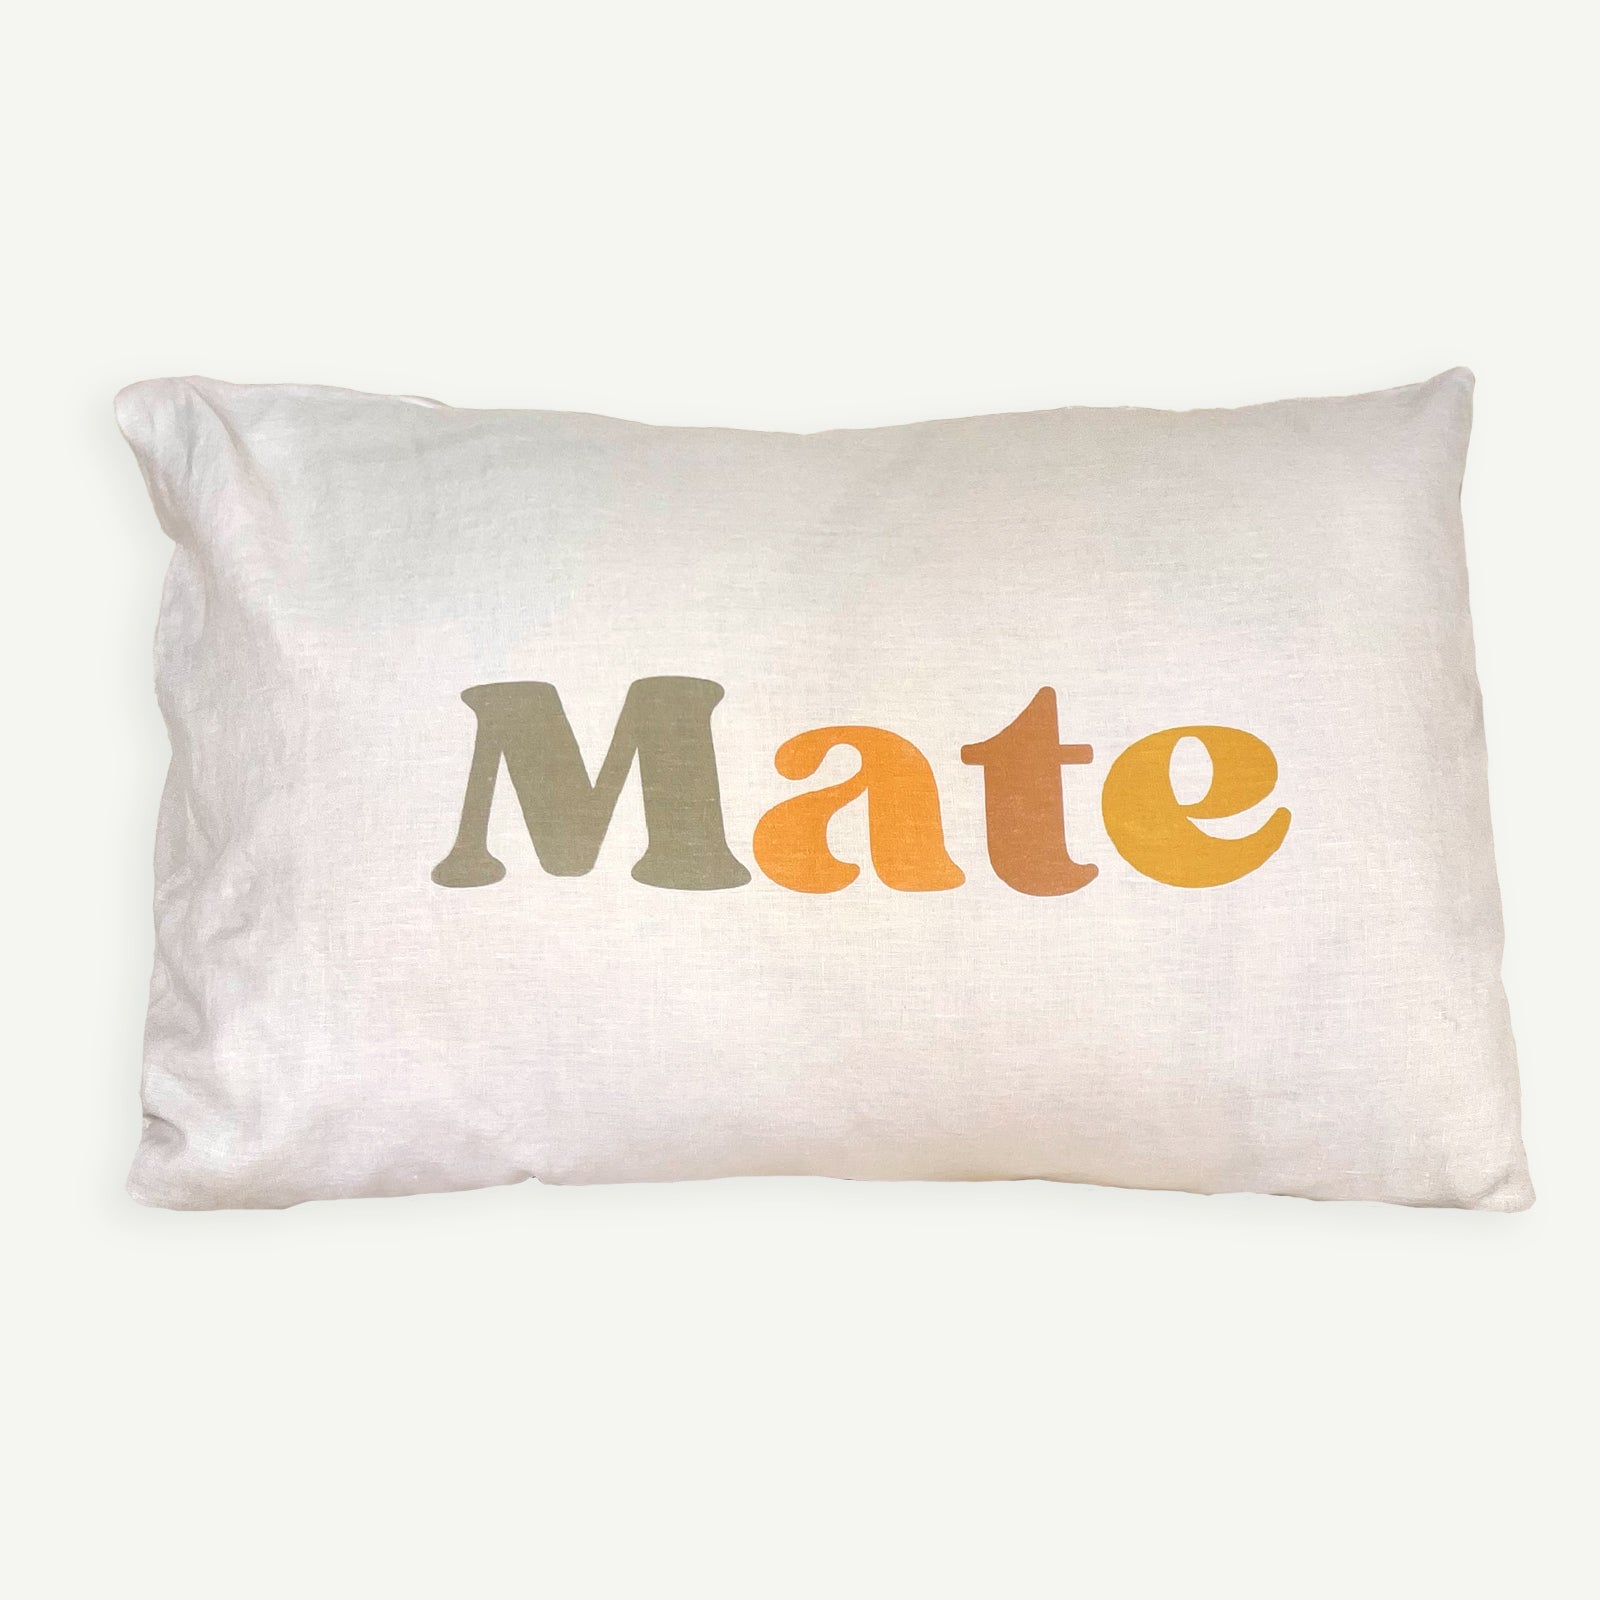 G'day Mate Standard Pillowcase